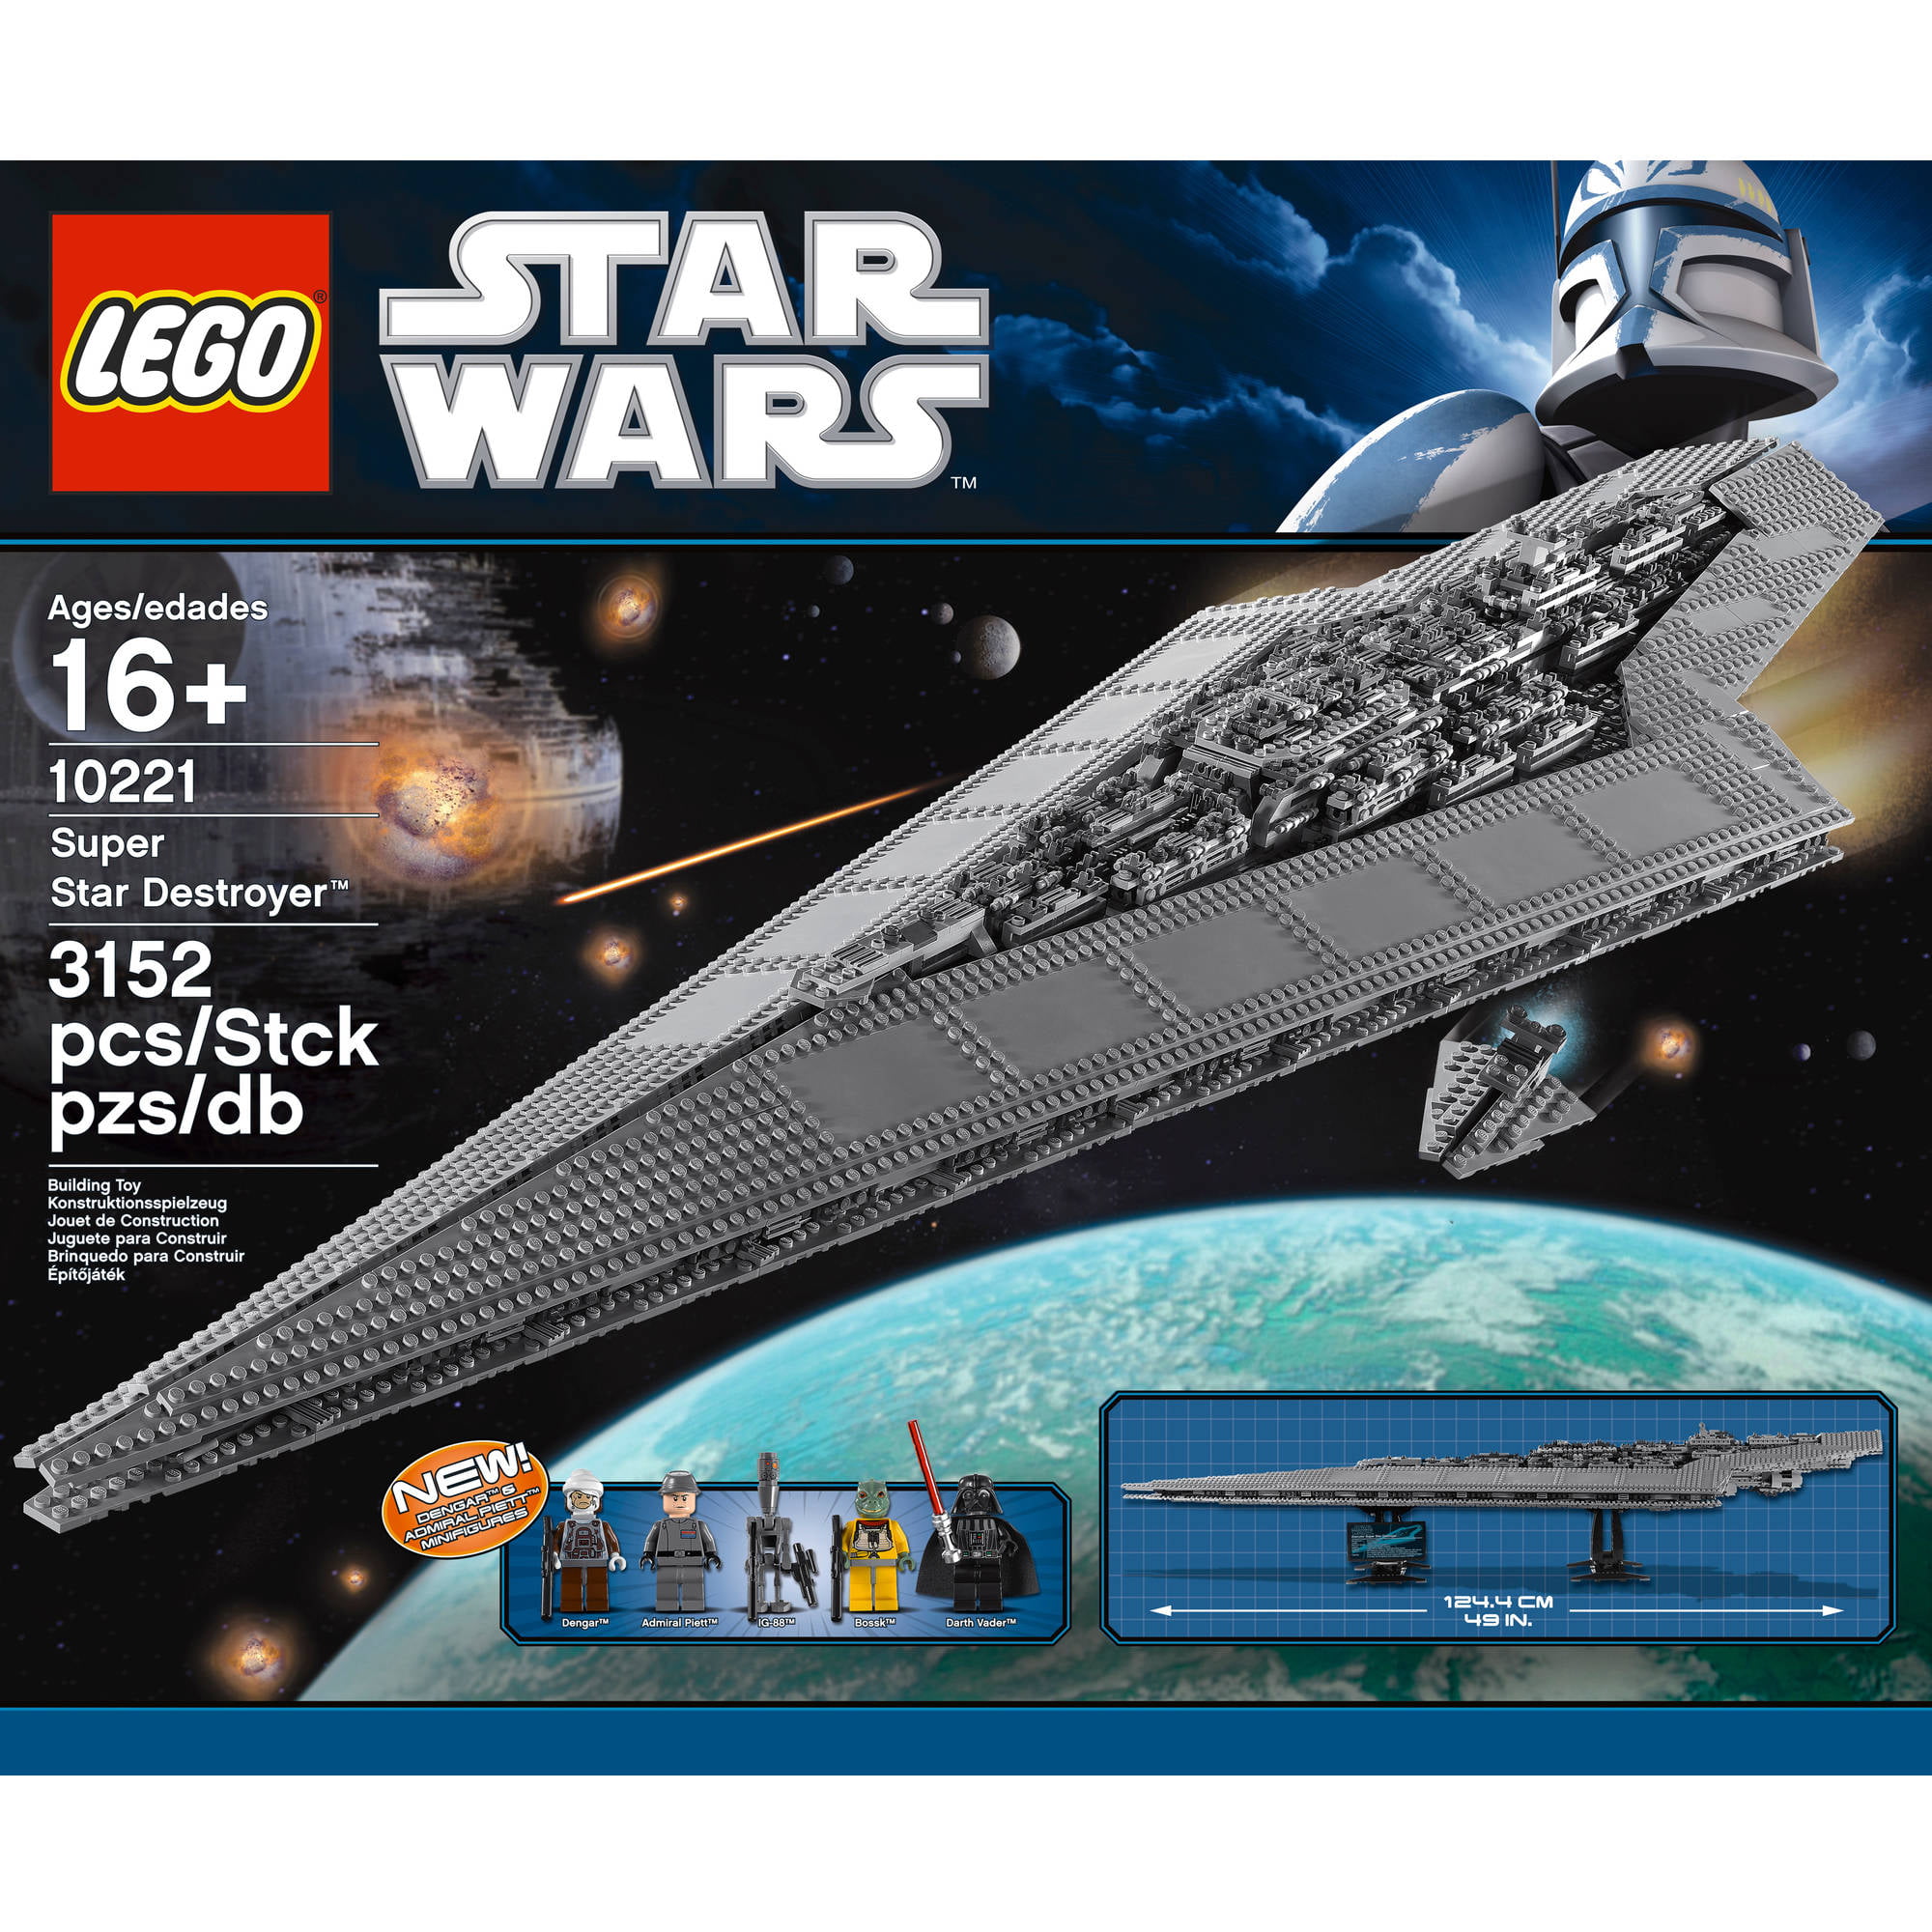 Betjening mulig ægtemand meddelelse LEGO Star Wars Super Star Destroyer 10221 - Walmart.com